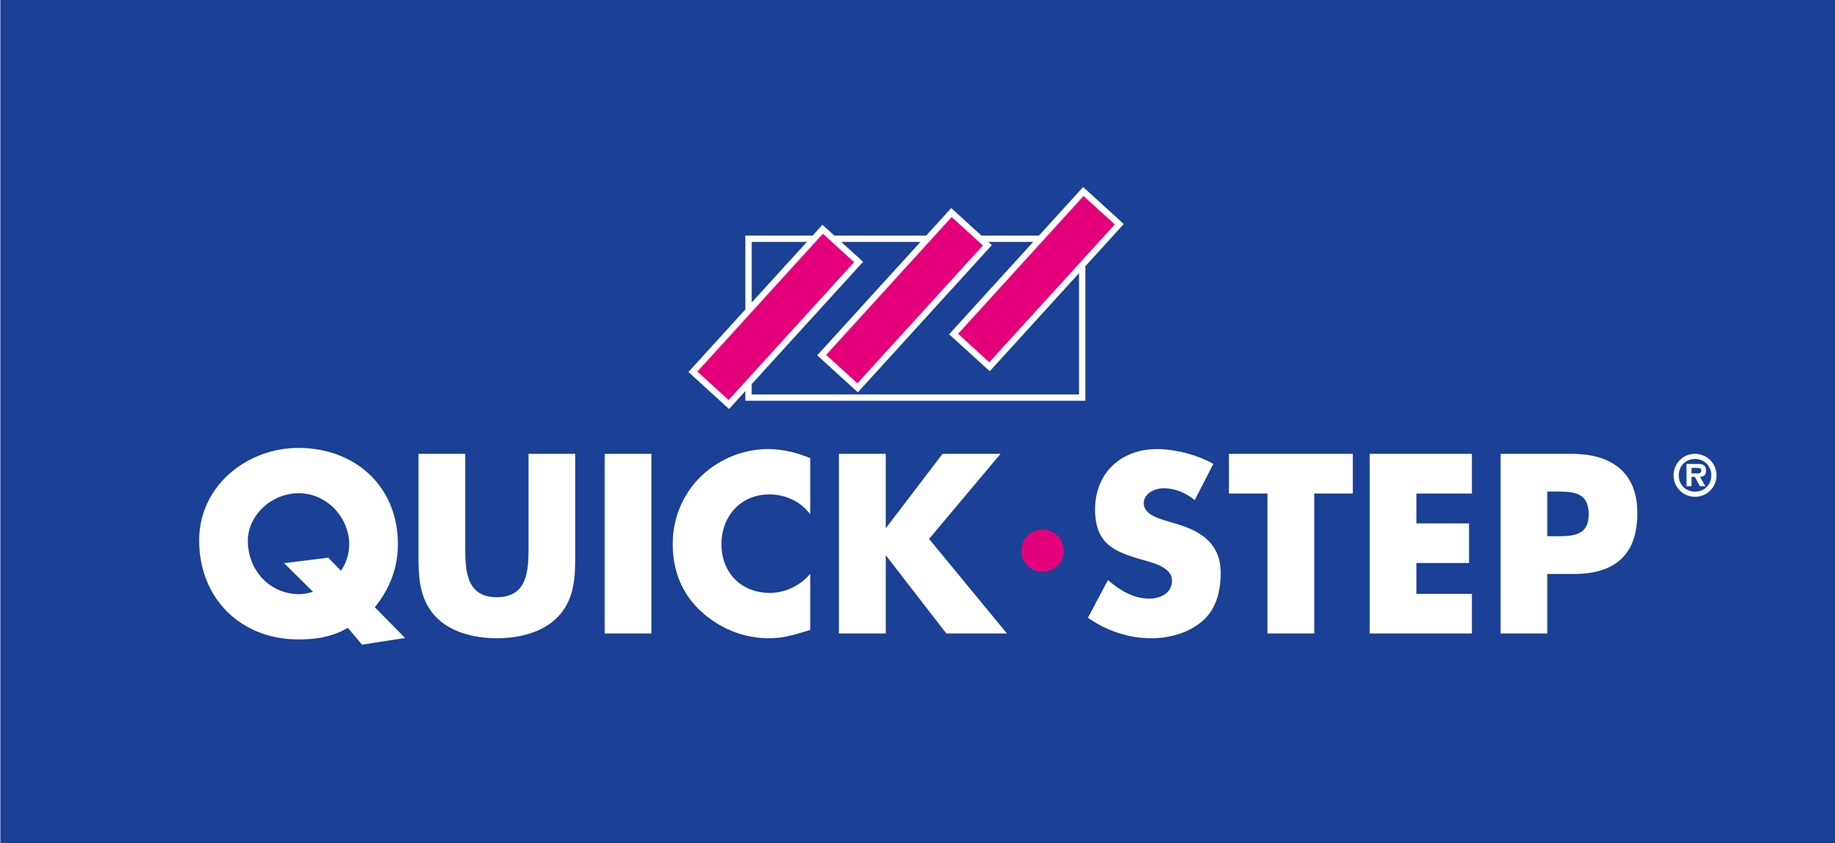 logo-quickstep-bleu-rgbsmall.jpg